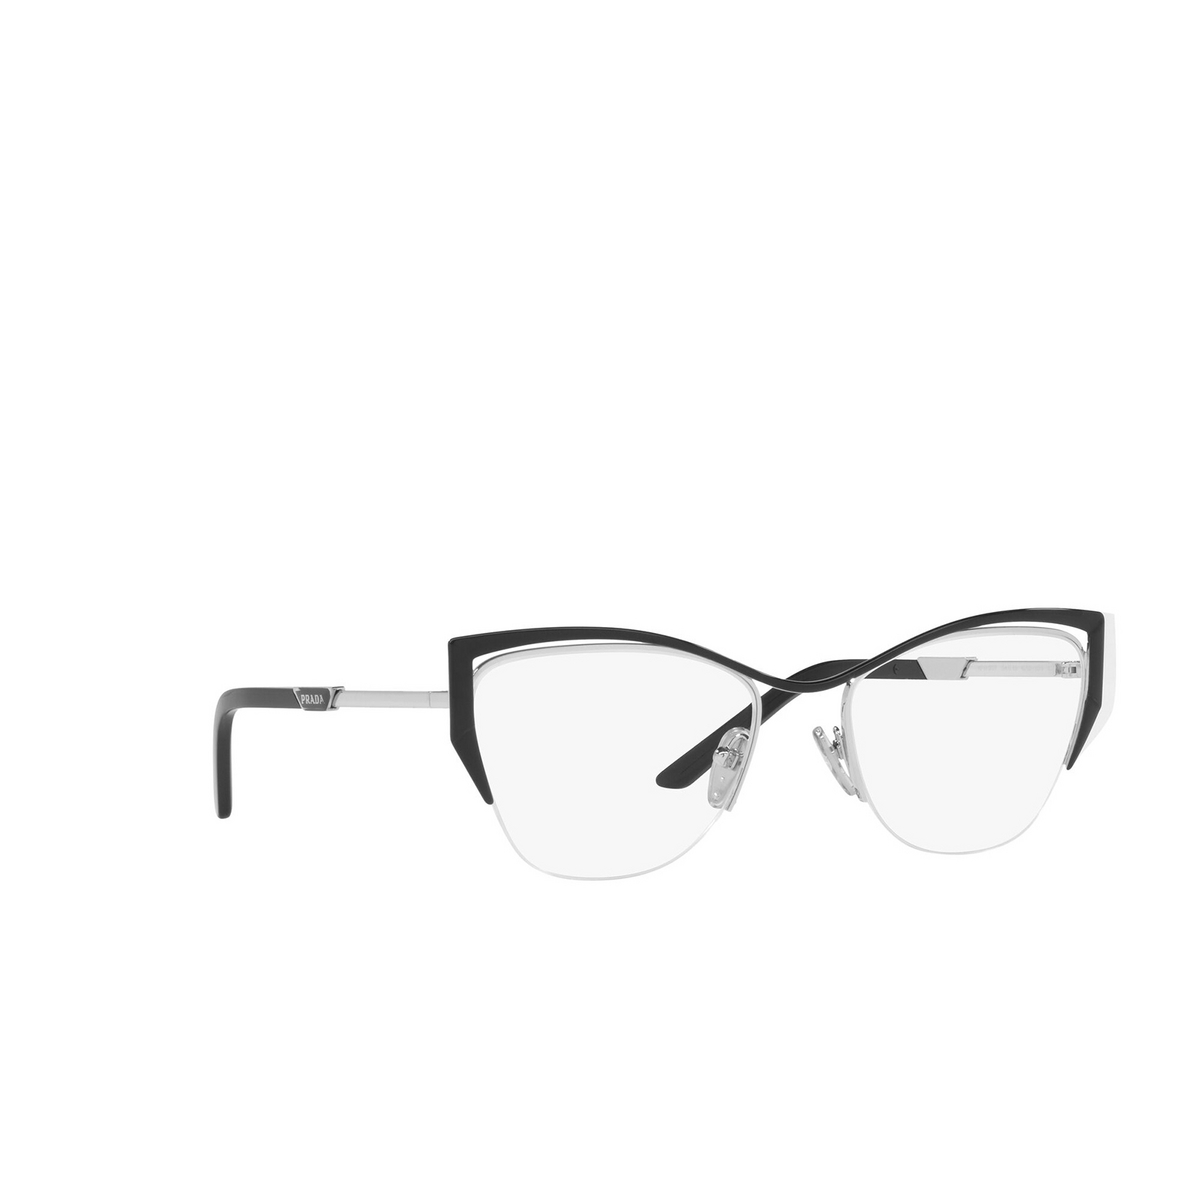 Prada® Butterfly Eyeglasses: PR 63YV color Silver / Black GAQ1O1 - three-quarters view.